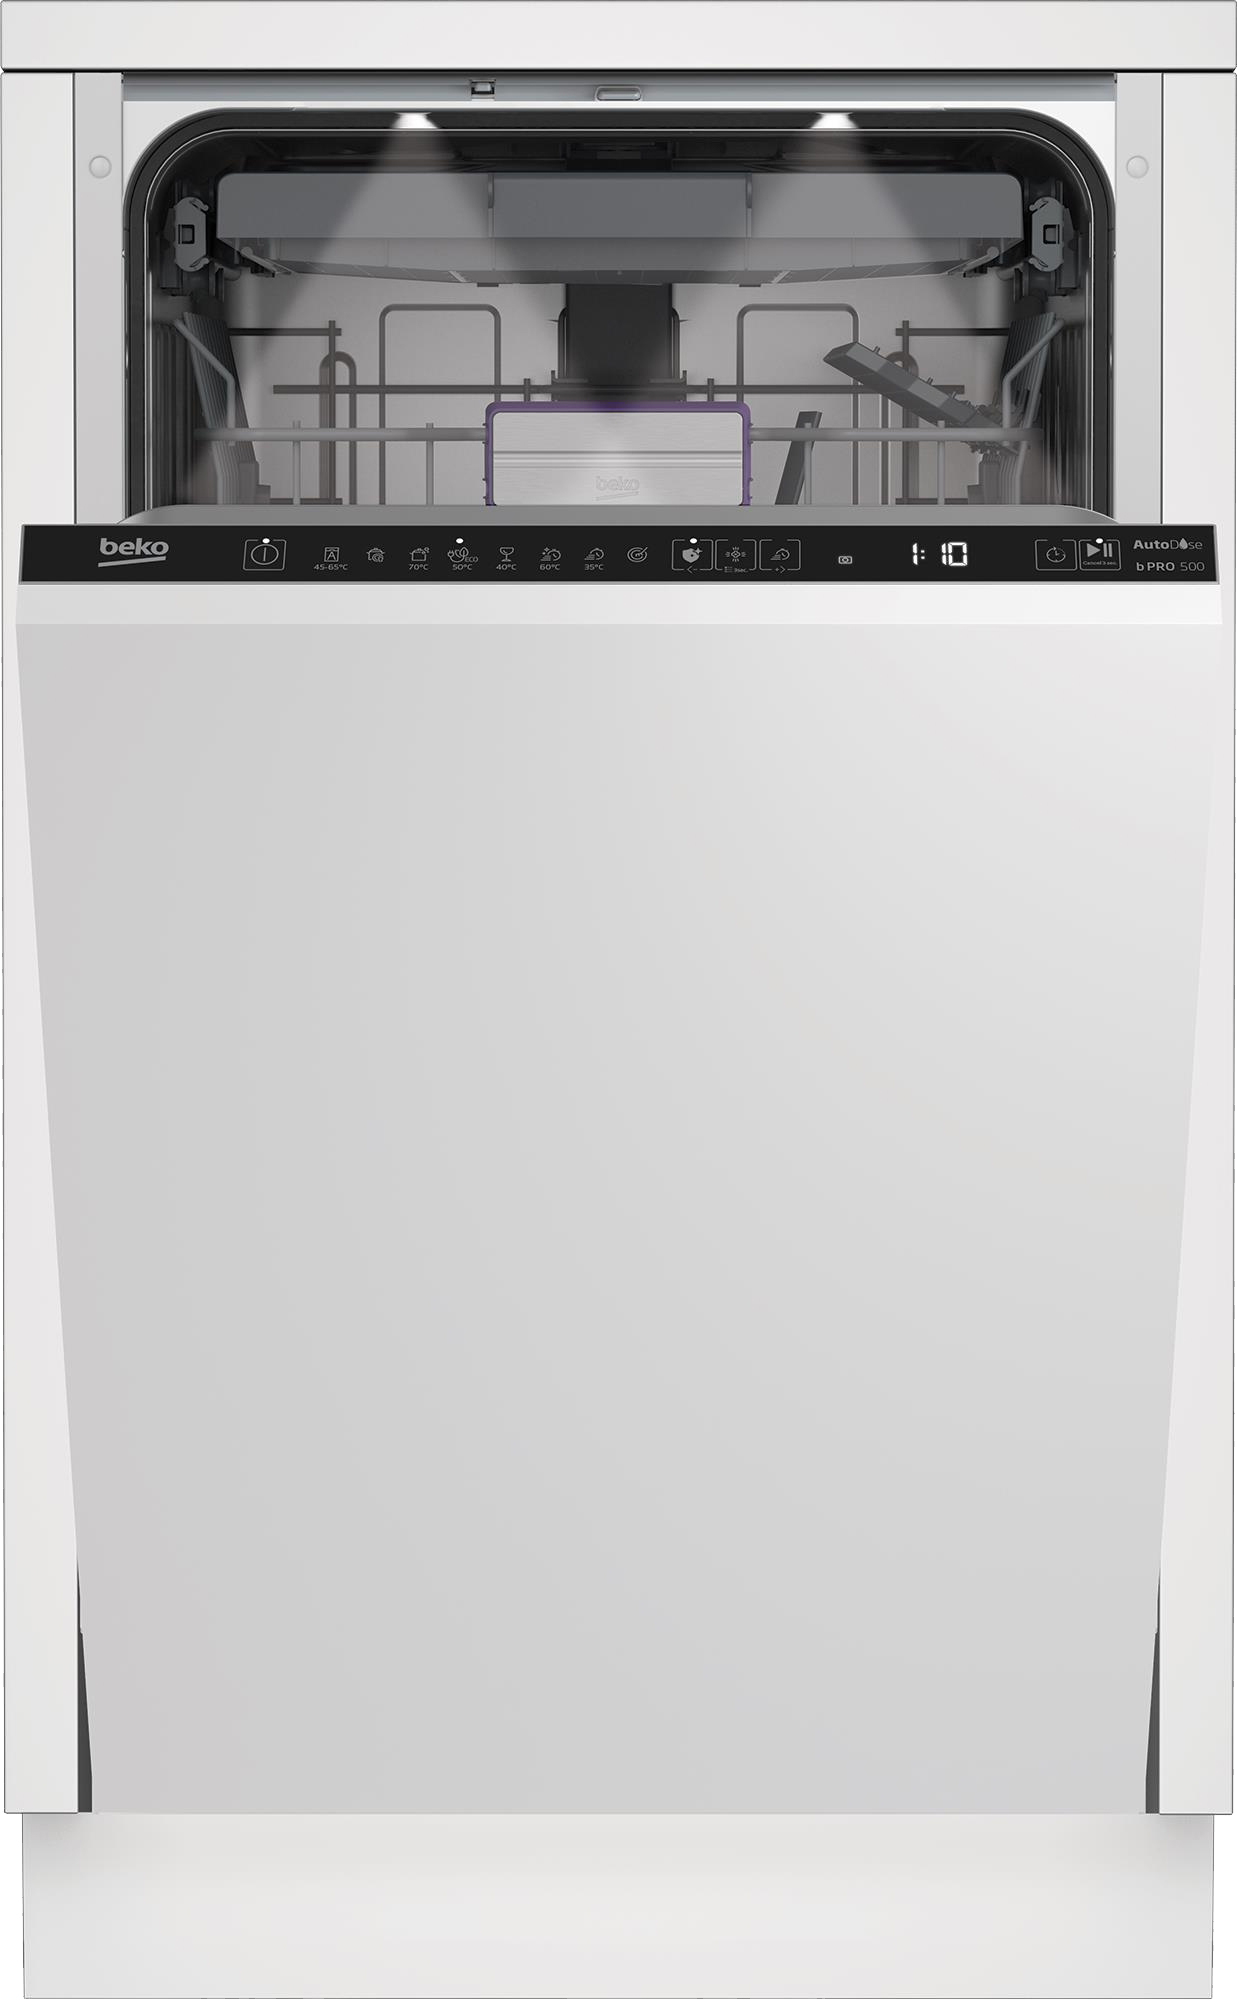 Посудомоечная машина Beko BDIS38040A